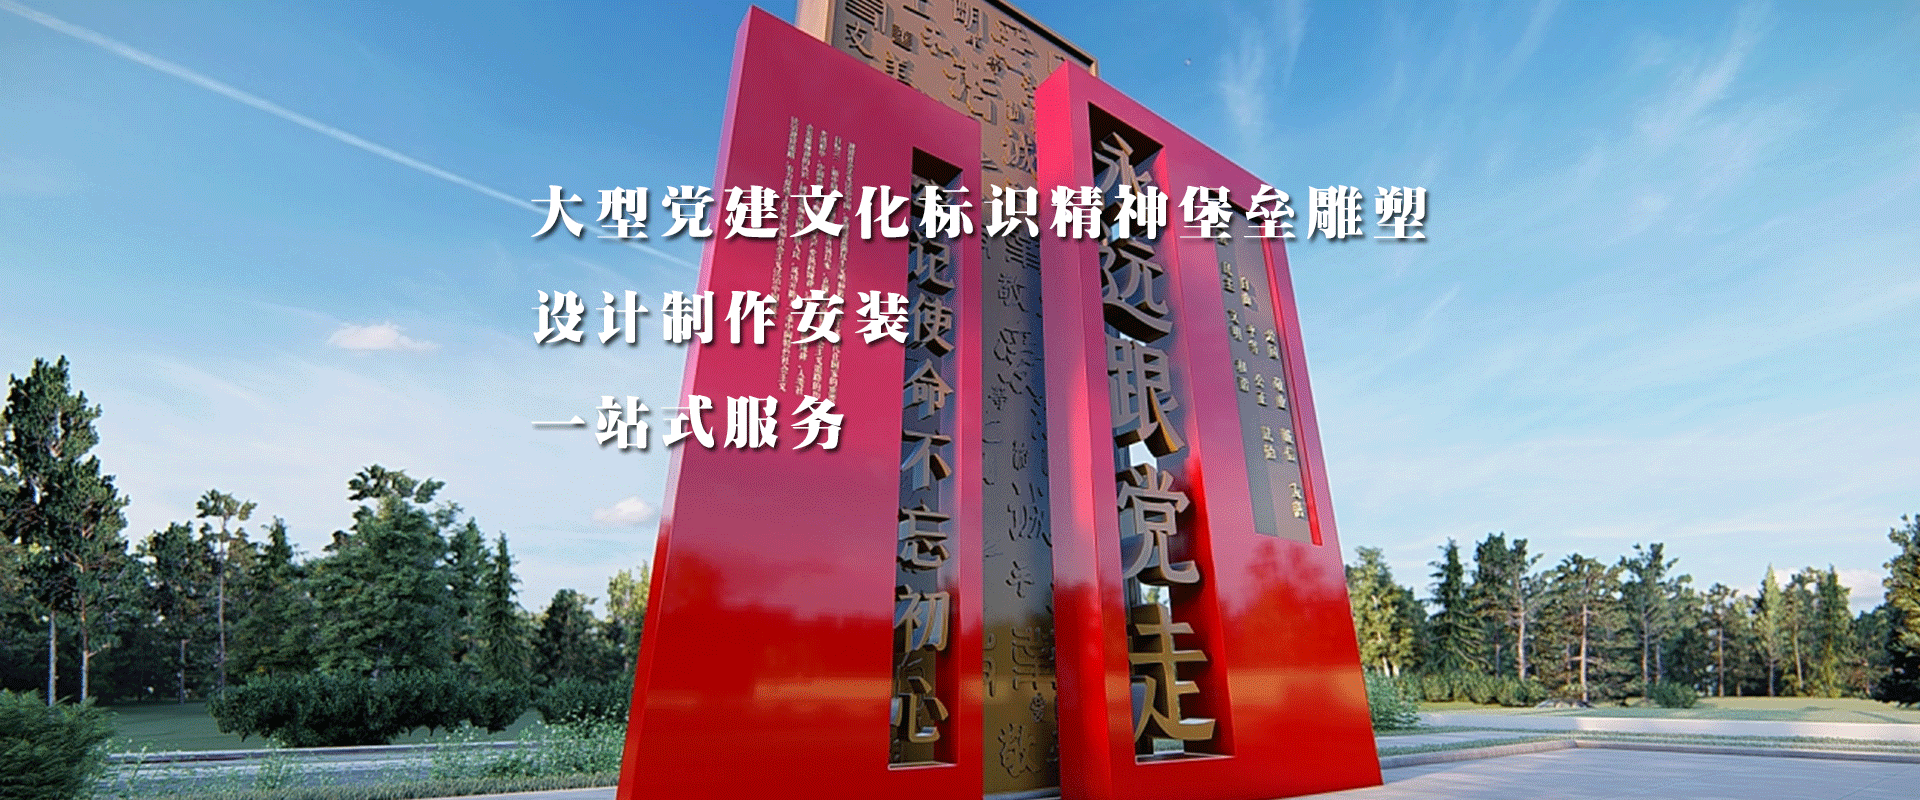 武汉中涵标识党建文化墙展厅展馆设计方案